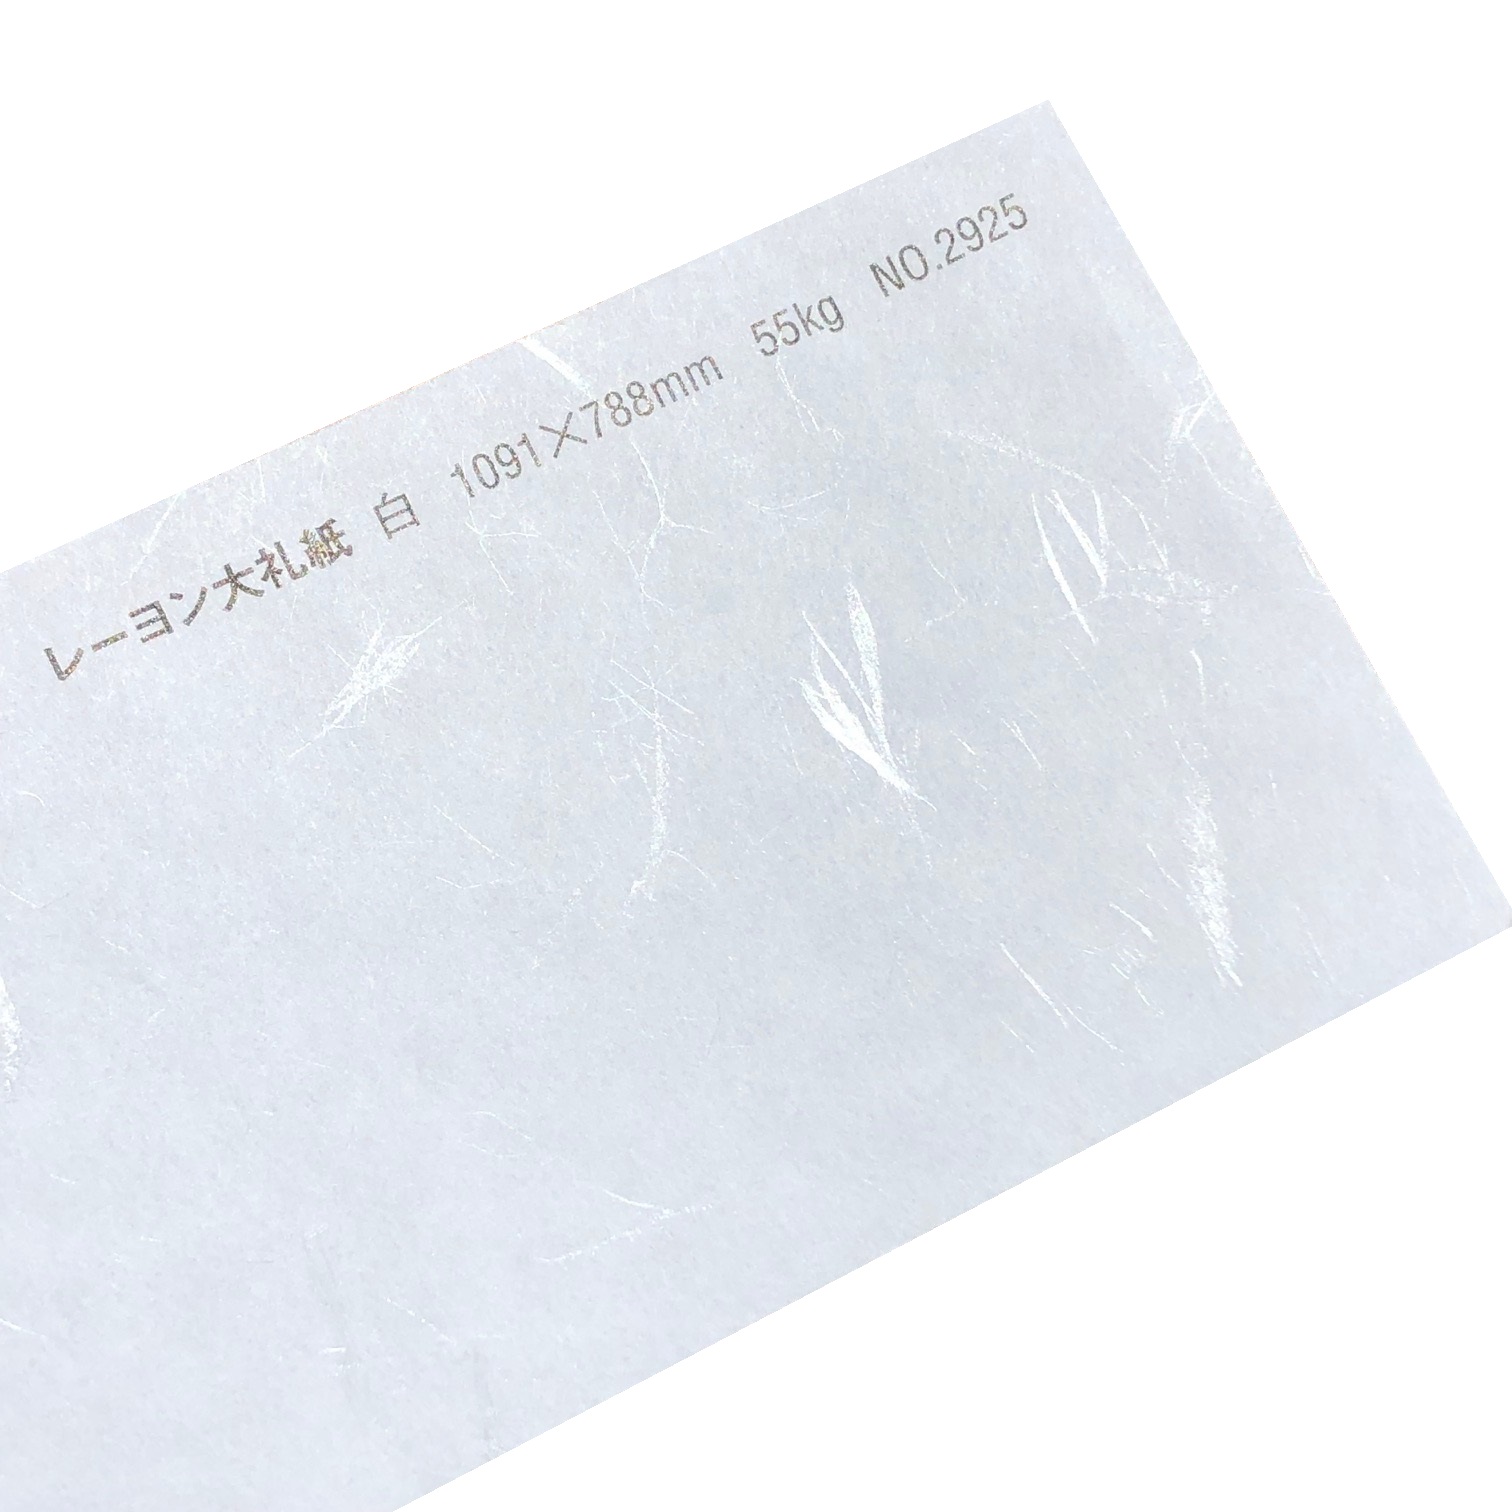 レーヨン大礼紙 55kg(0.10mm) 和紙 No.2925 商品画像